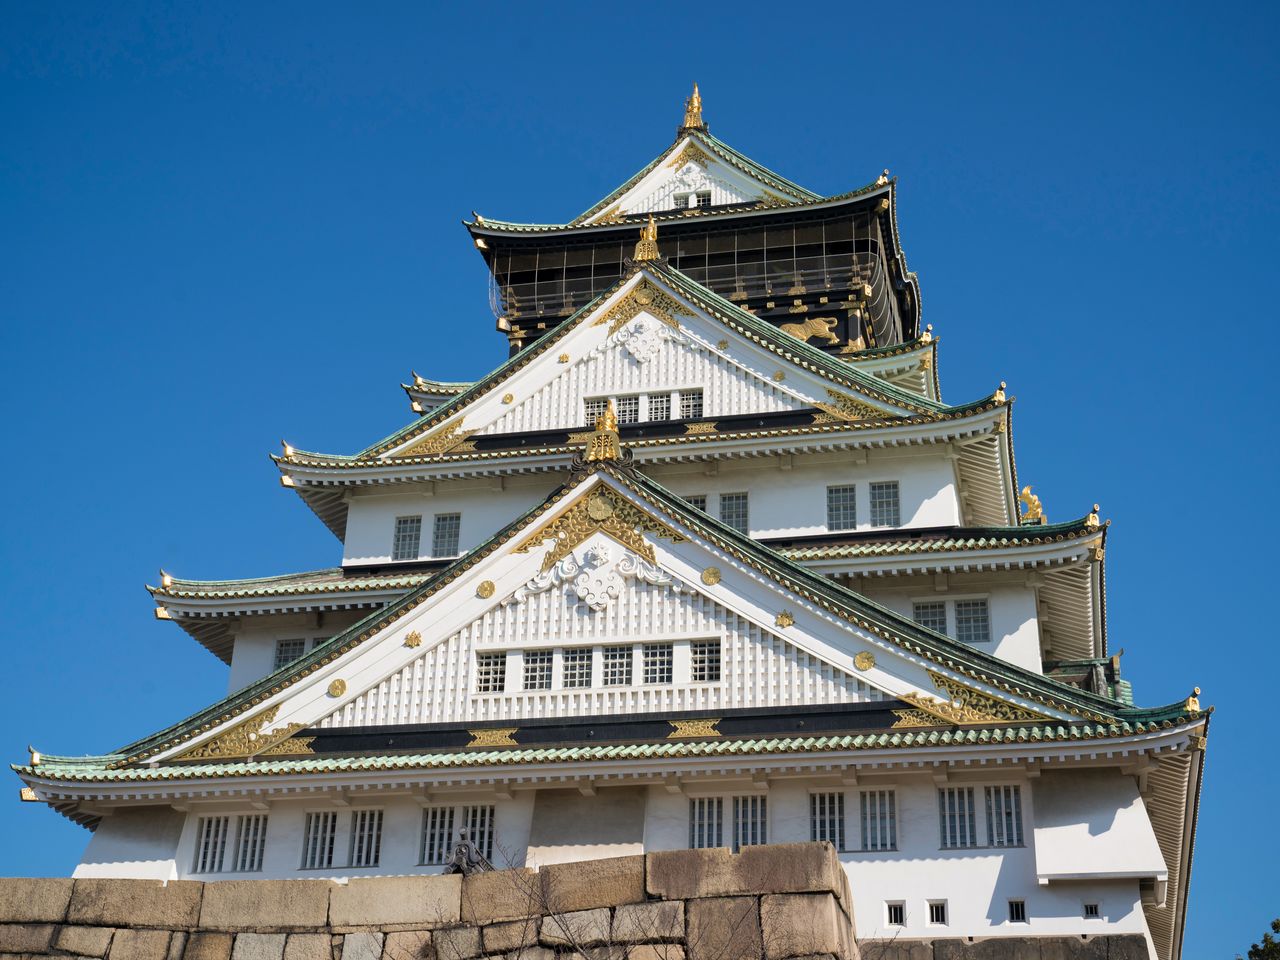 現在的天守閣，是參考「大阪夏之陣圖屏風」上描繪的城堡而重建的